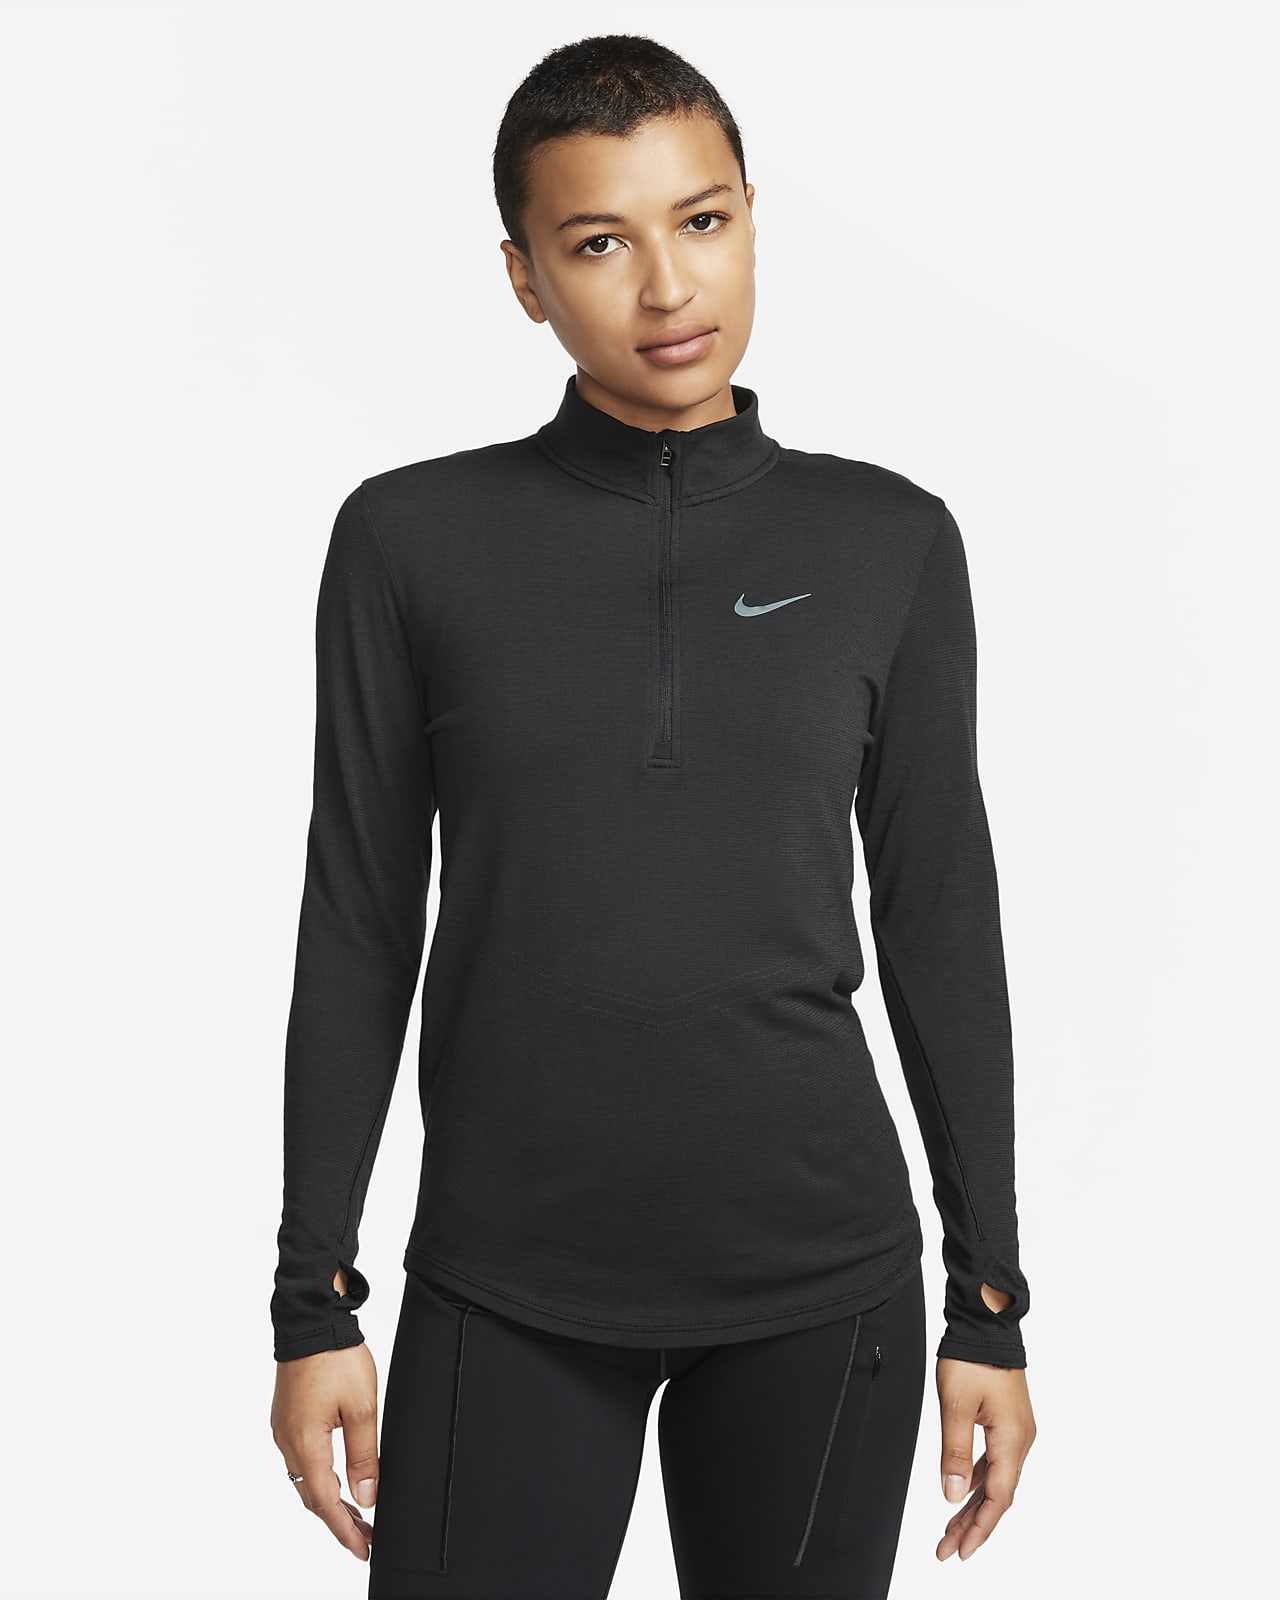 Haut de running en laine à manches longues Nike Dri-FIT Swift pour femme